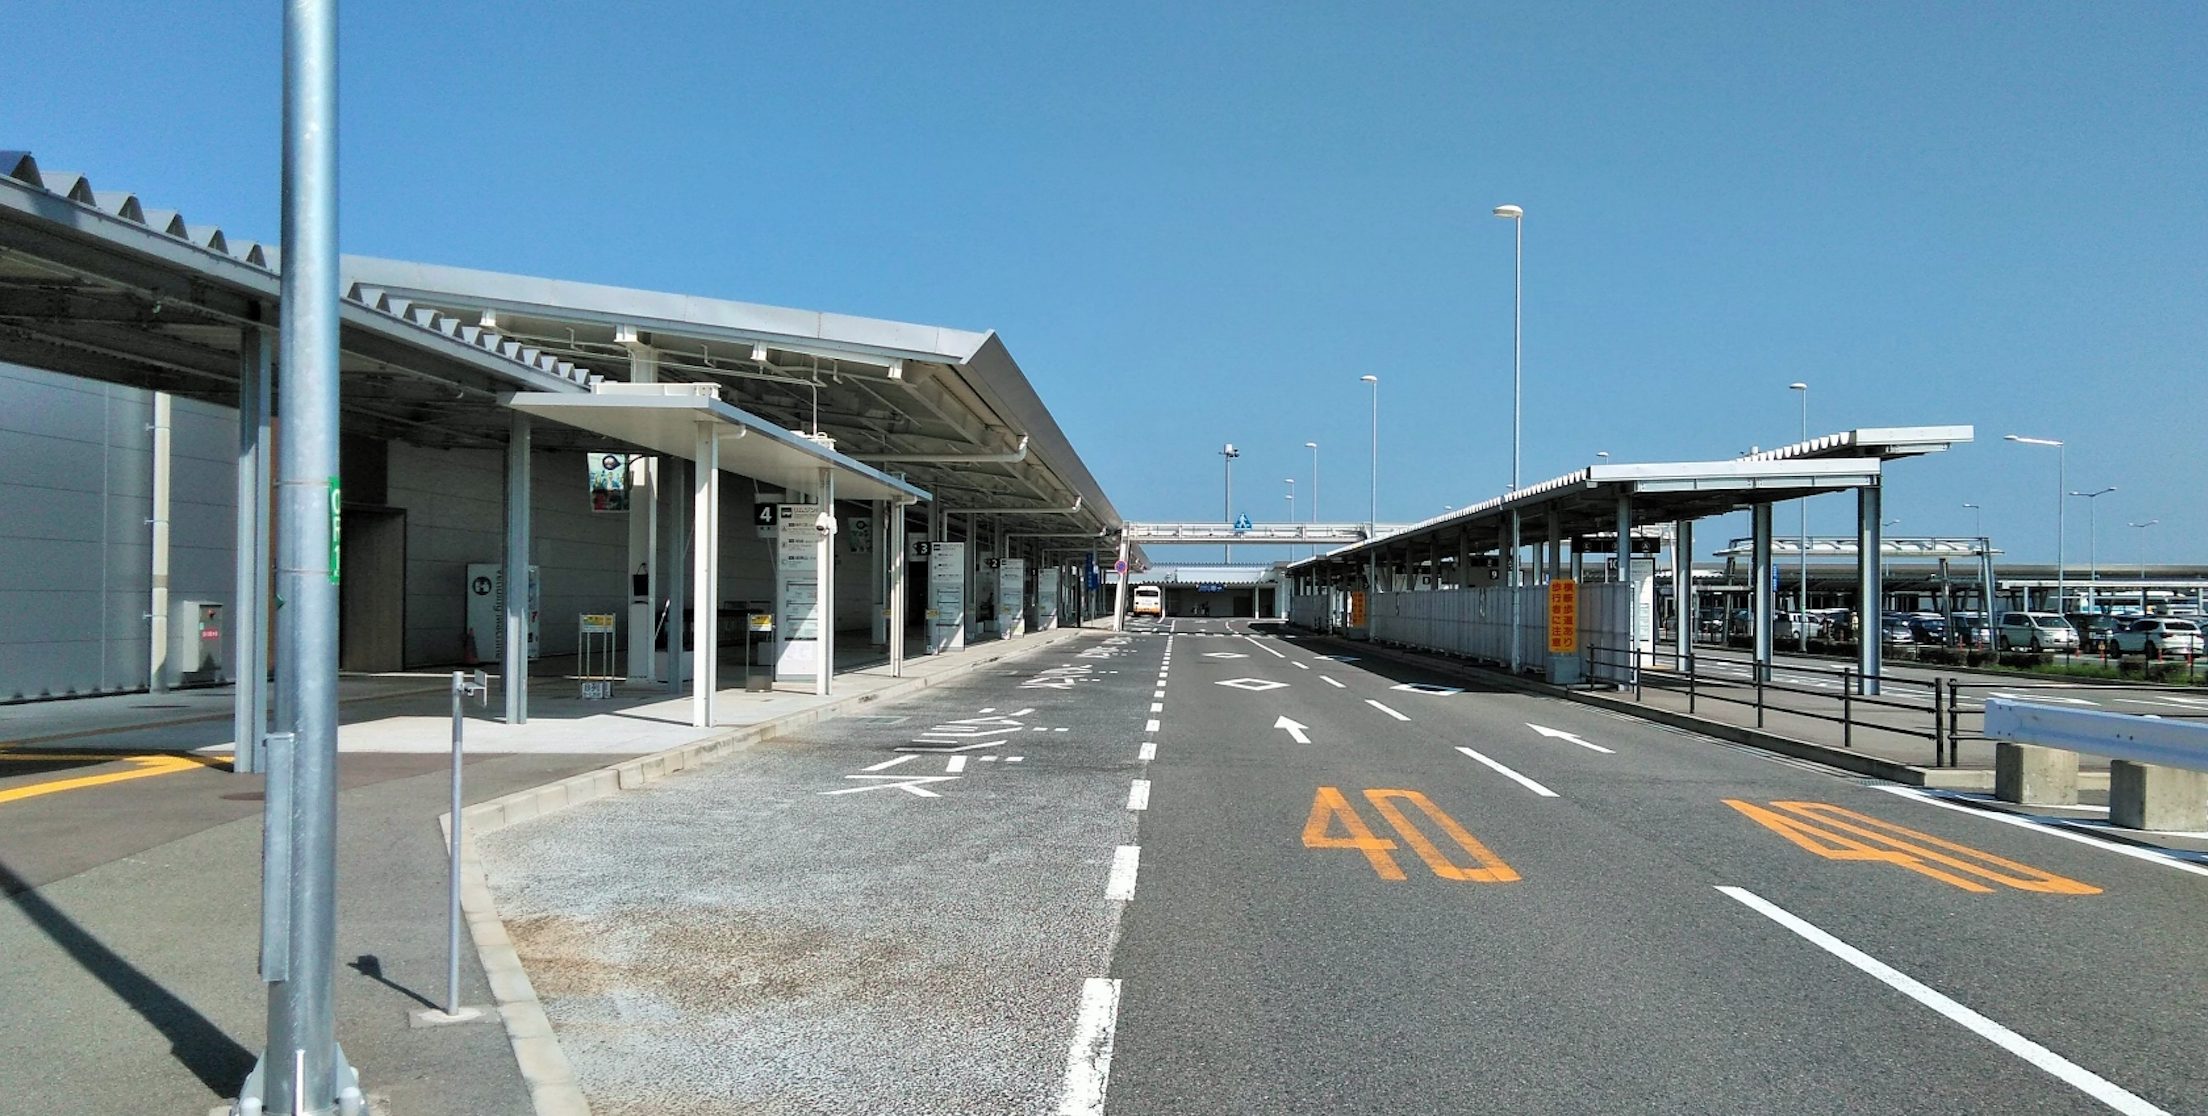 関空 関西国際空港 安い駐車場おすすめランキング26選 格安パーキングはここから徹底解説